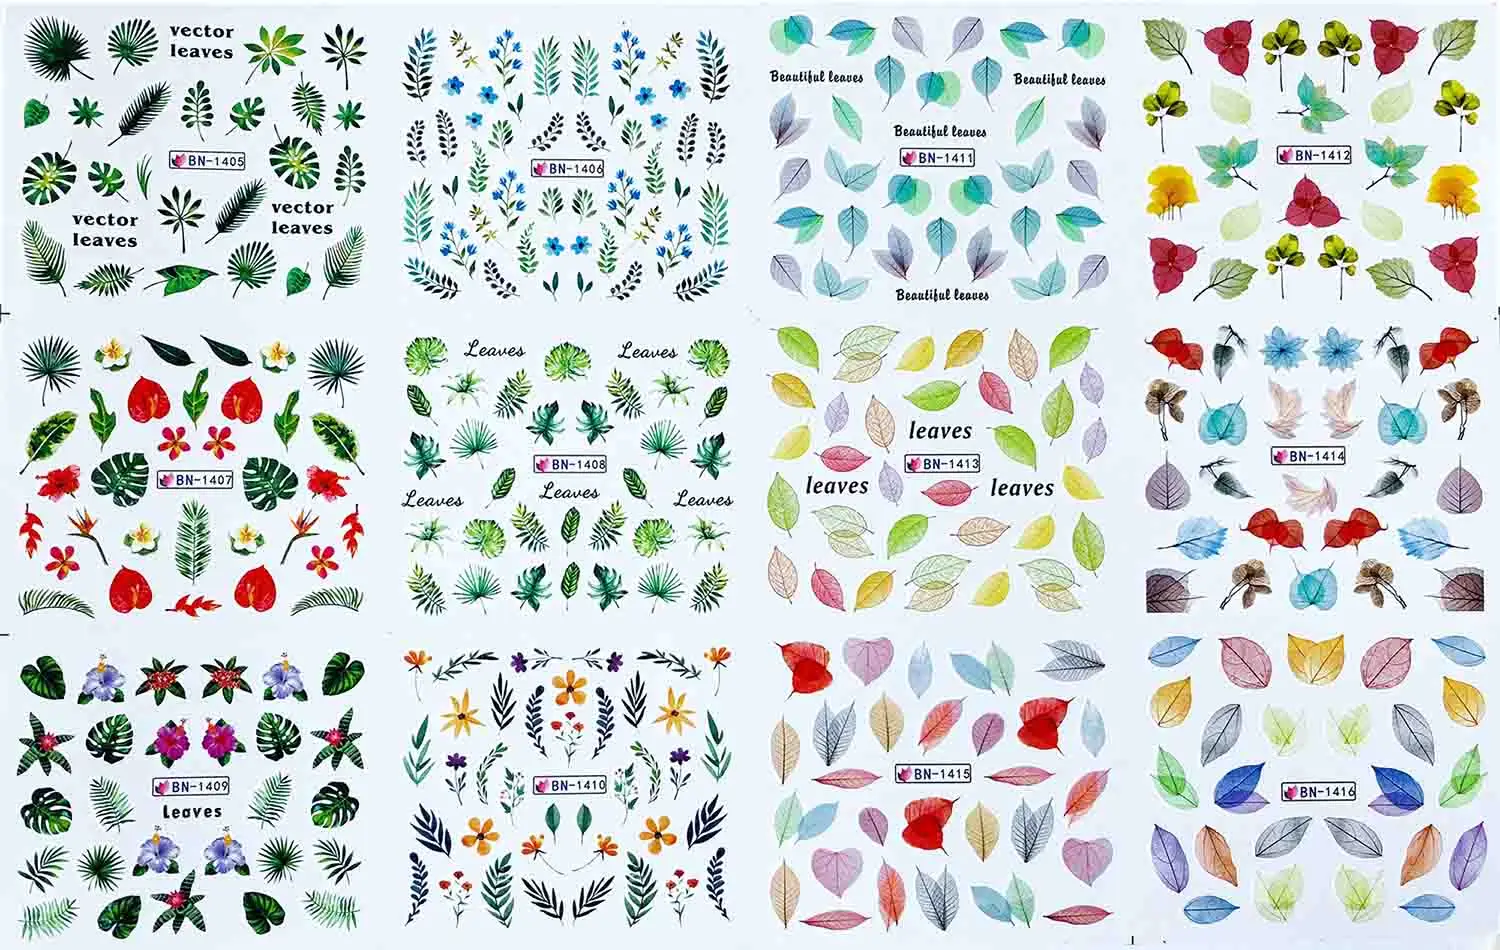 12 видов конструкций переводные наклейки для ногтей с изображением листьев, дерева, зеленого цвета, простой летний слайдер для маникюра, для дизайна ногтей, водяные наклейки, новинка, BN1405